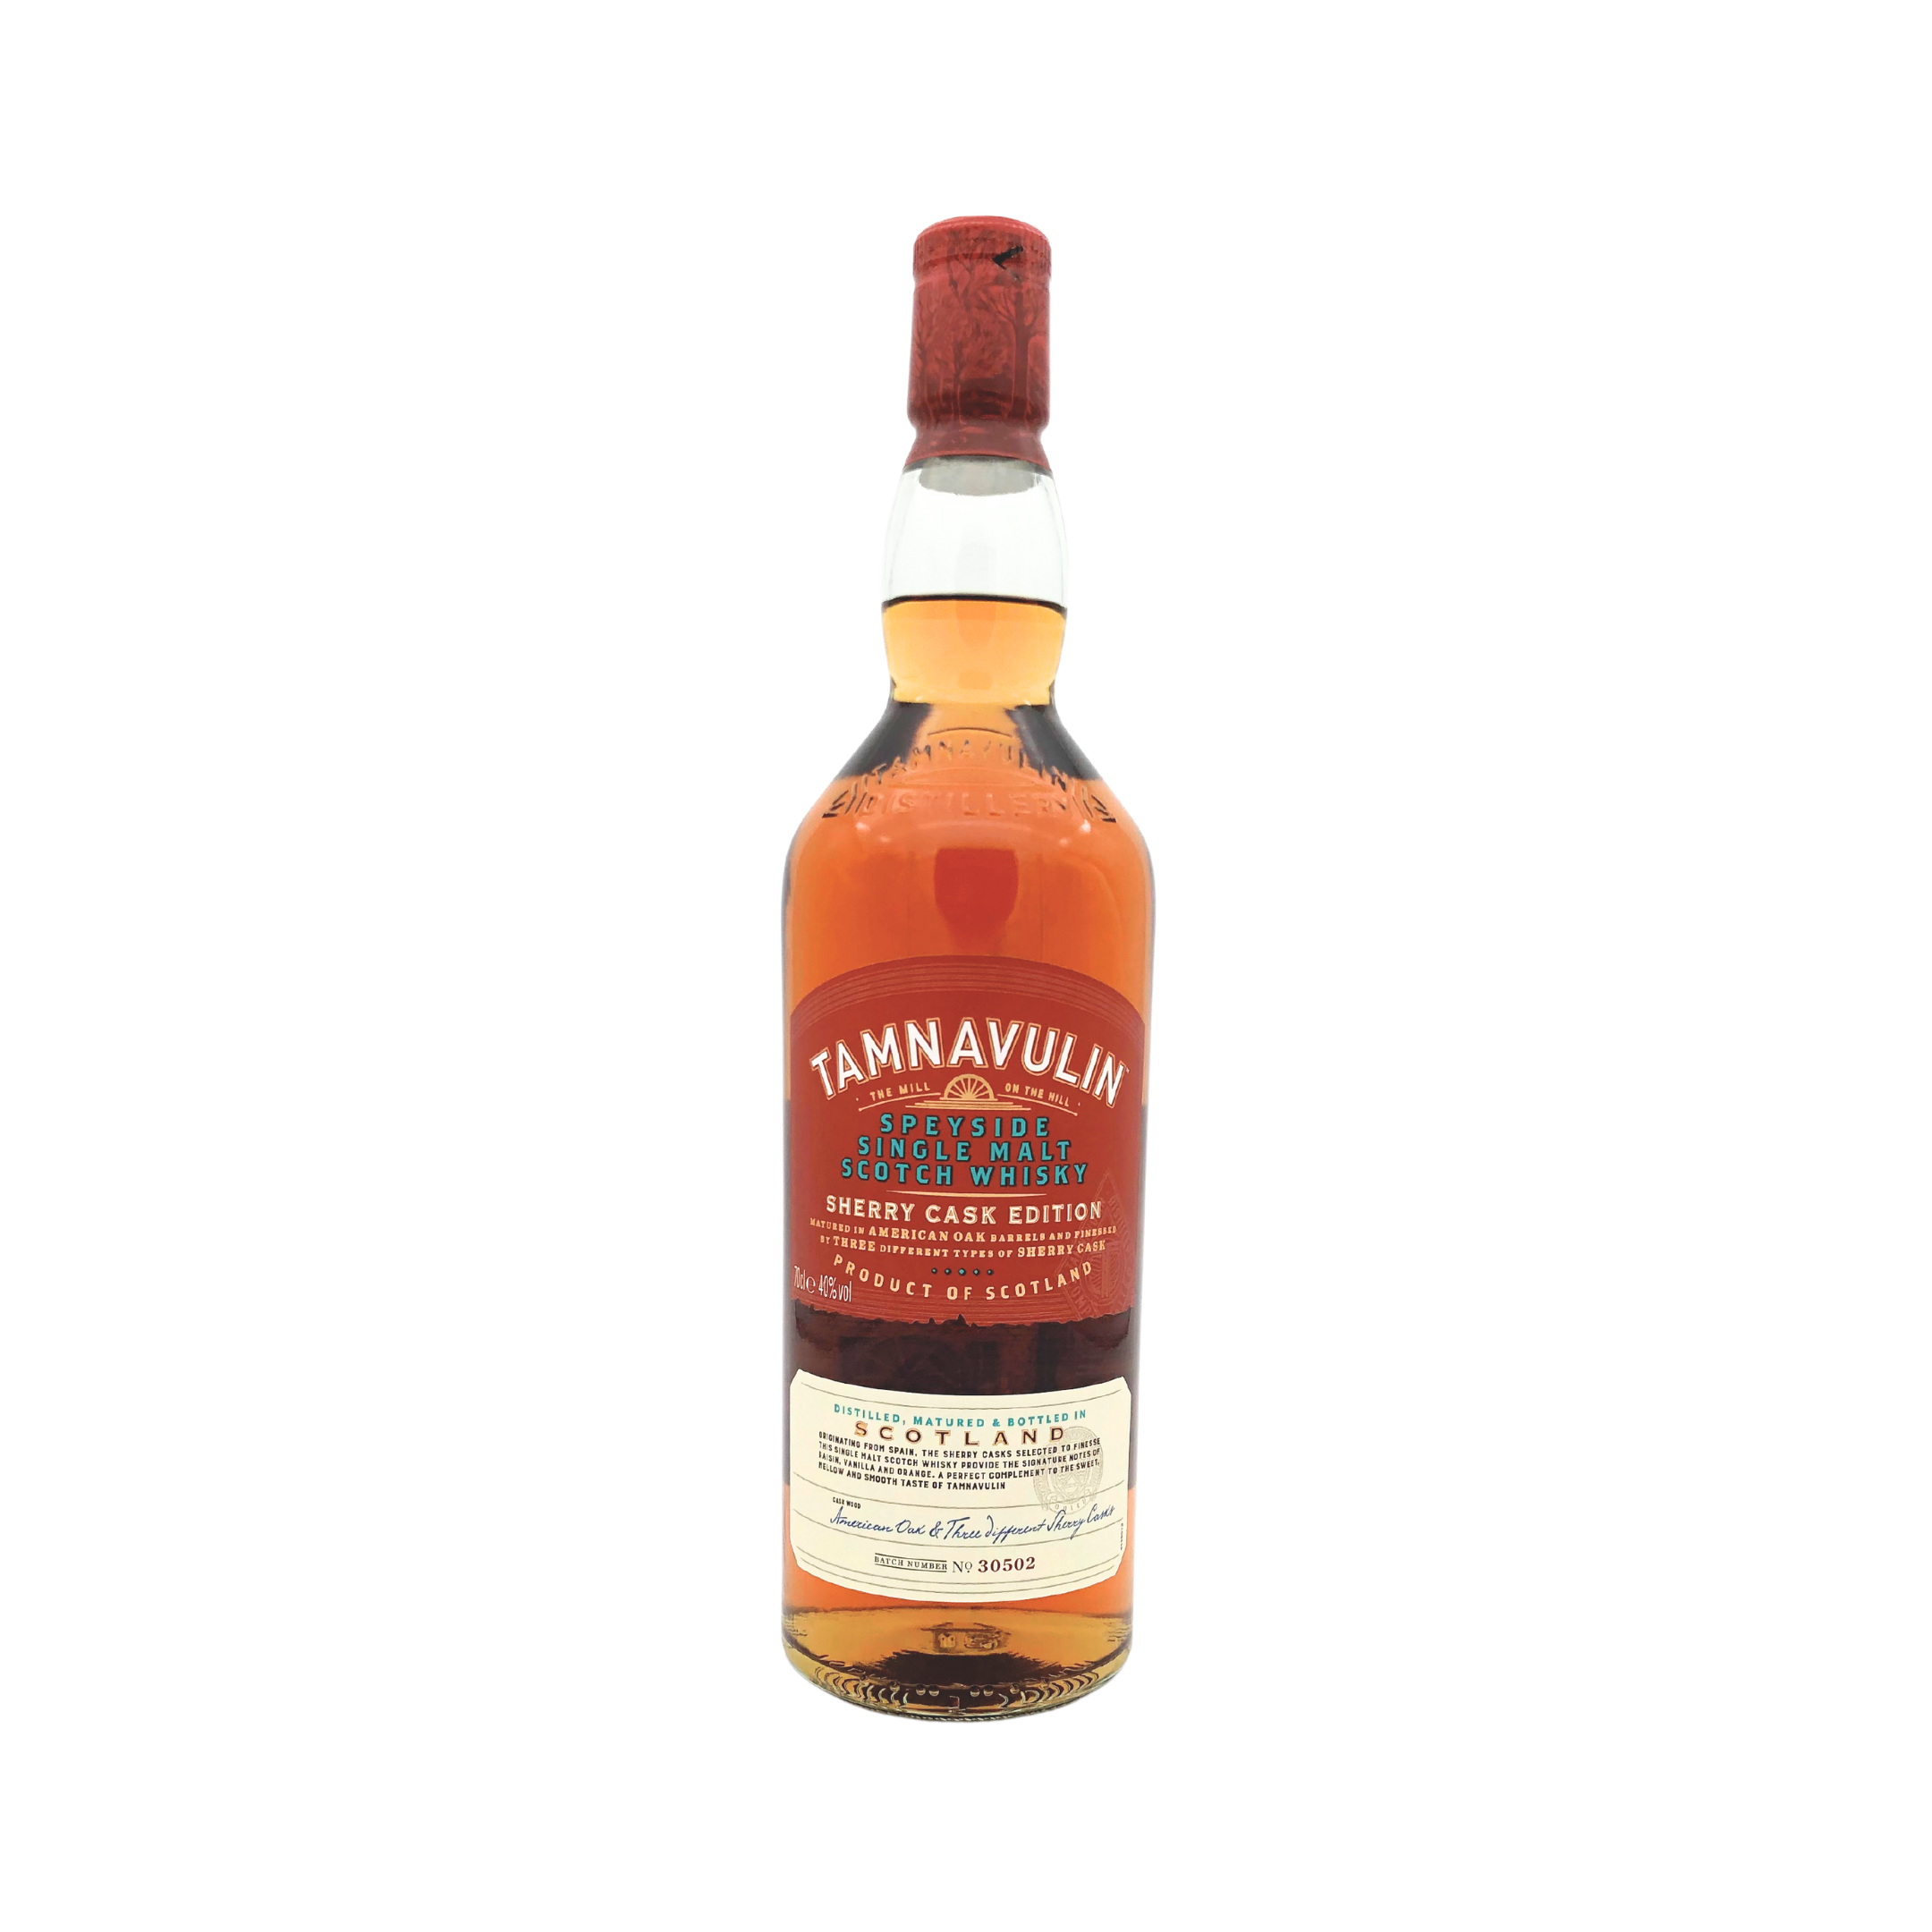 TAMNAVULIN - Sherry Cask Single Malt Scotch Whisky